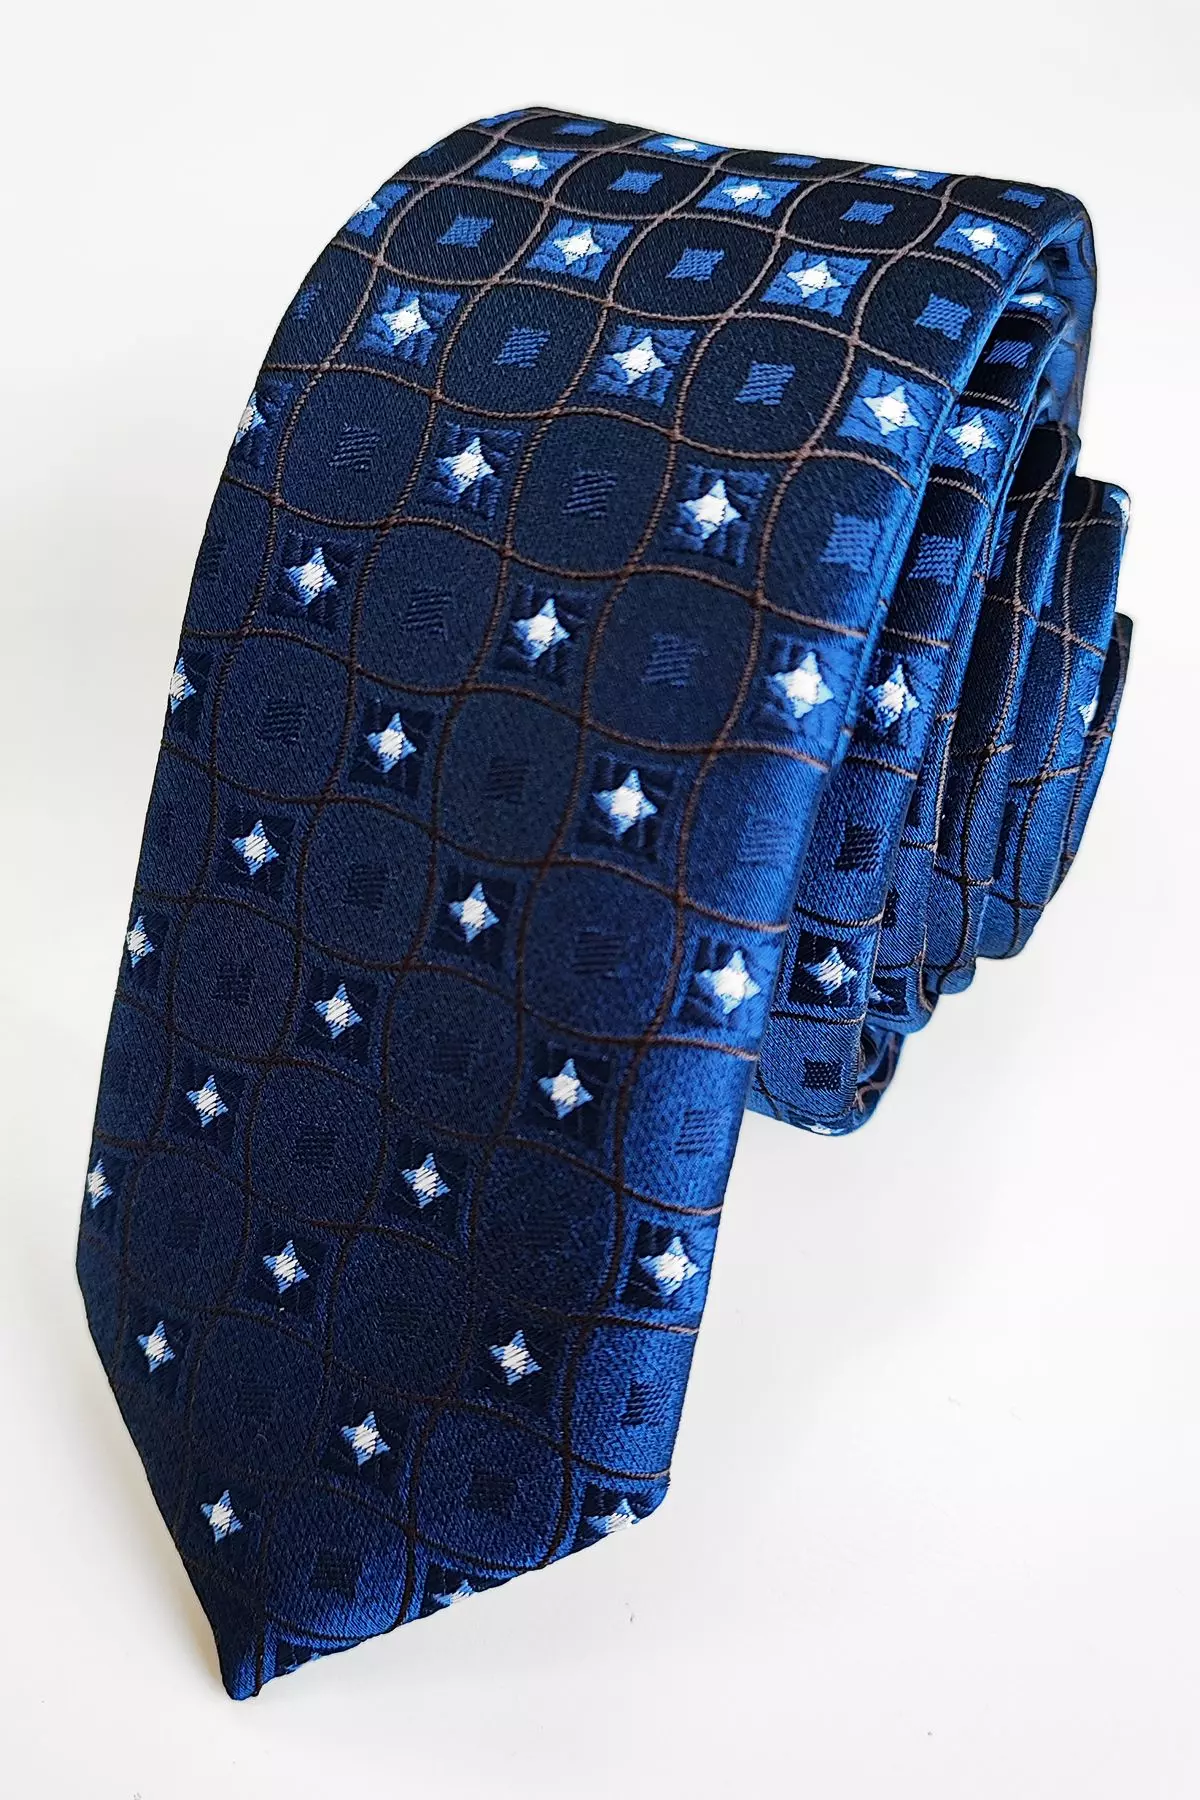 PATTERNED nyakkendő (w-091) slim